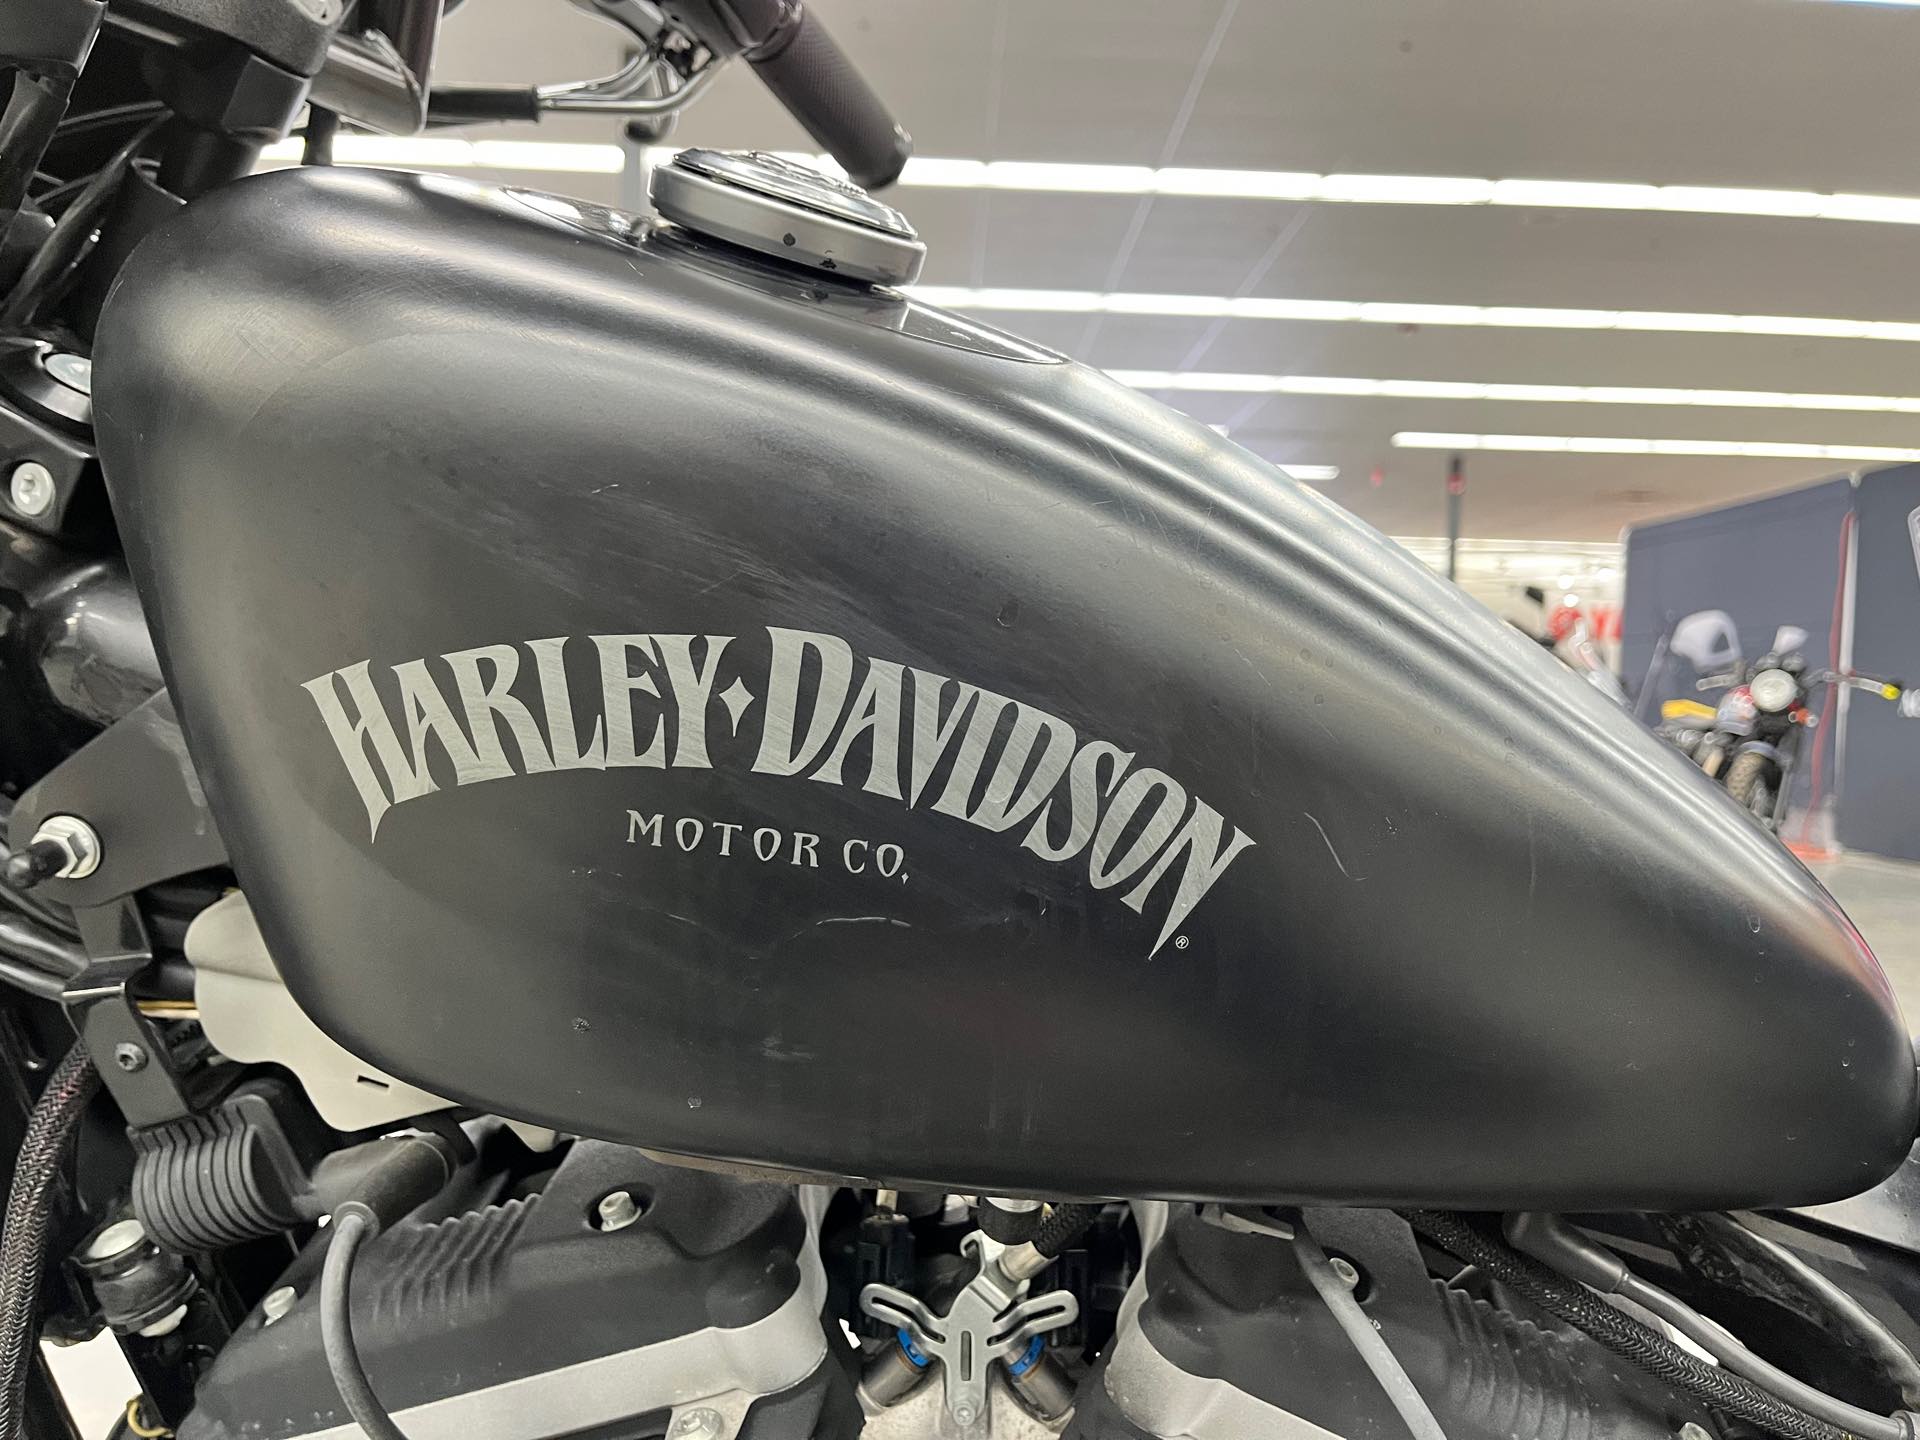 2013 Harley-Davidson Sportster 883 at Aces Motorcycles - Denver